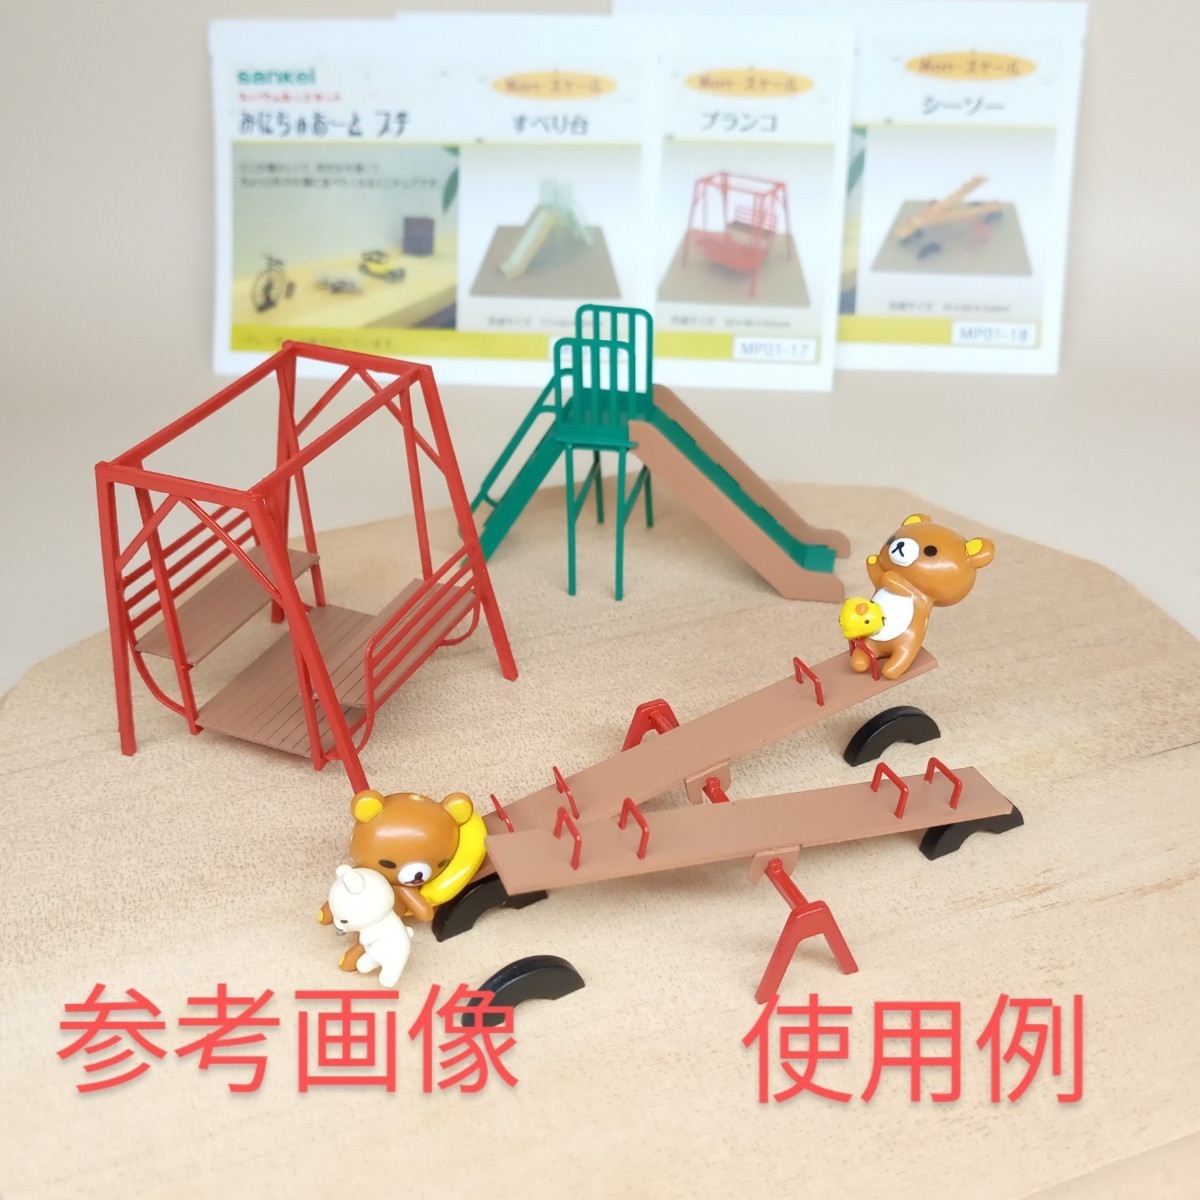 すべり台・ブランコ・シーソー 公園遊具の模型フィギュア☆さんけい みにちゅあーとプチ☆ペーパークラフト 塗装組立完成品_画像8